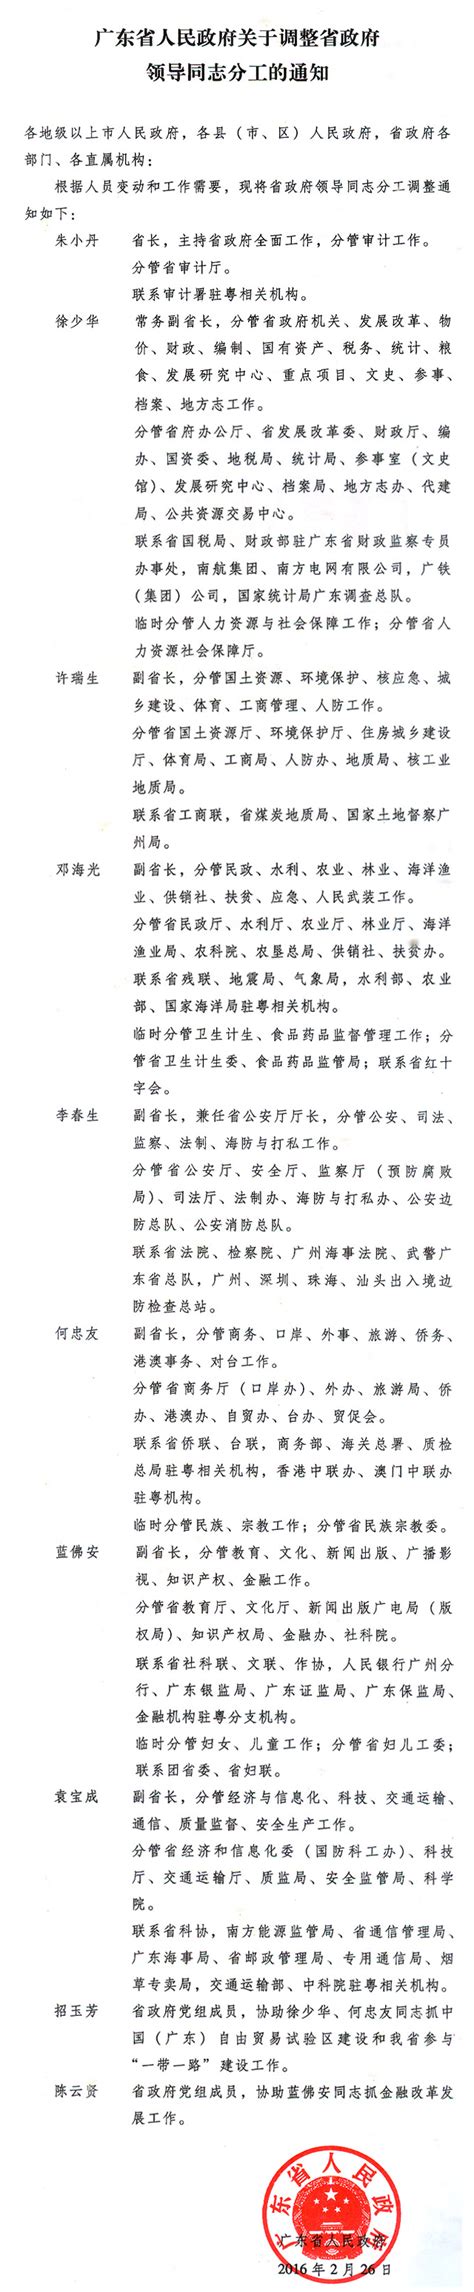 广东省人民政府关于调整省政府领导同志分工的通知